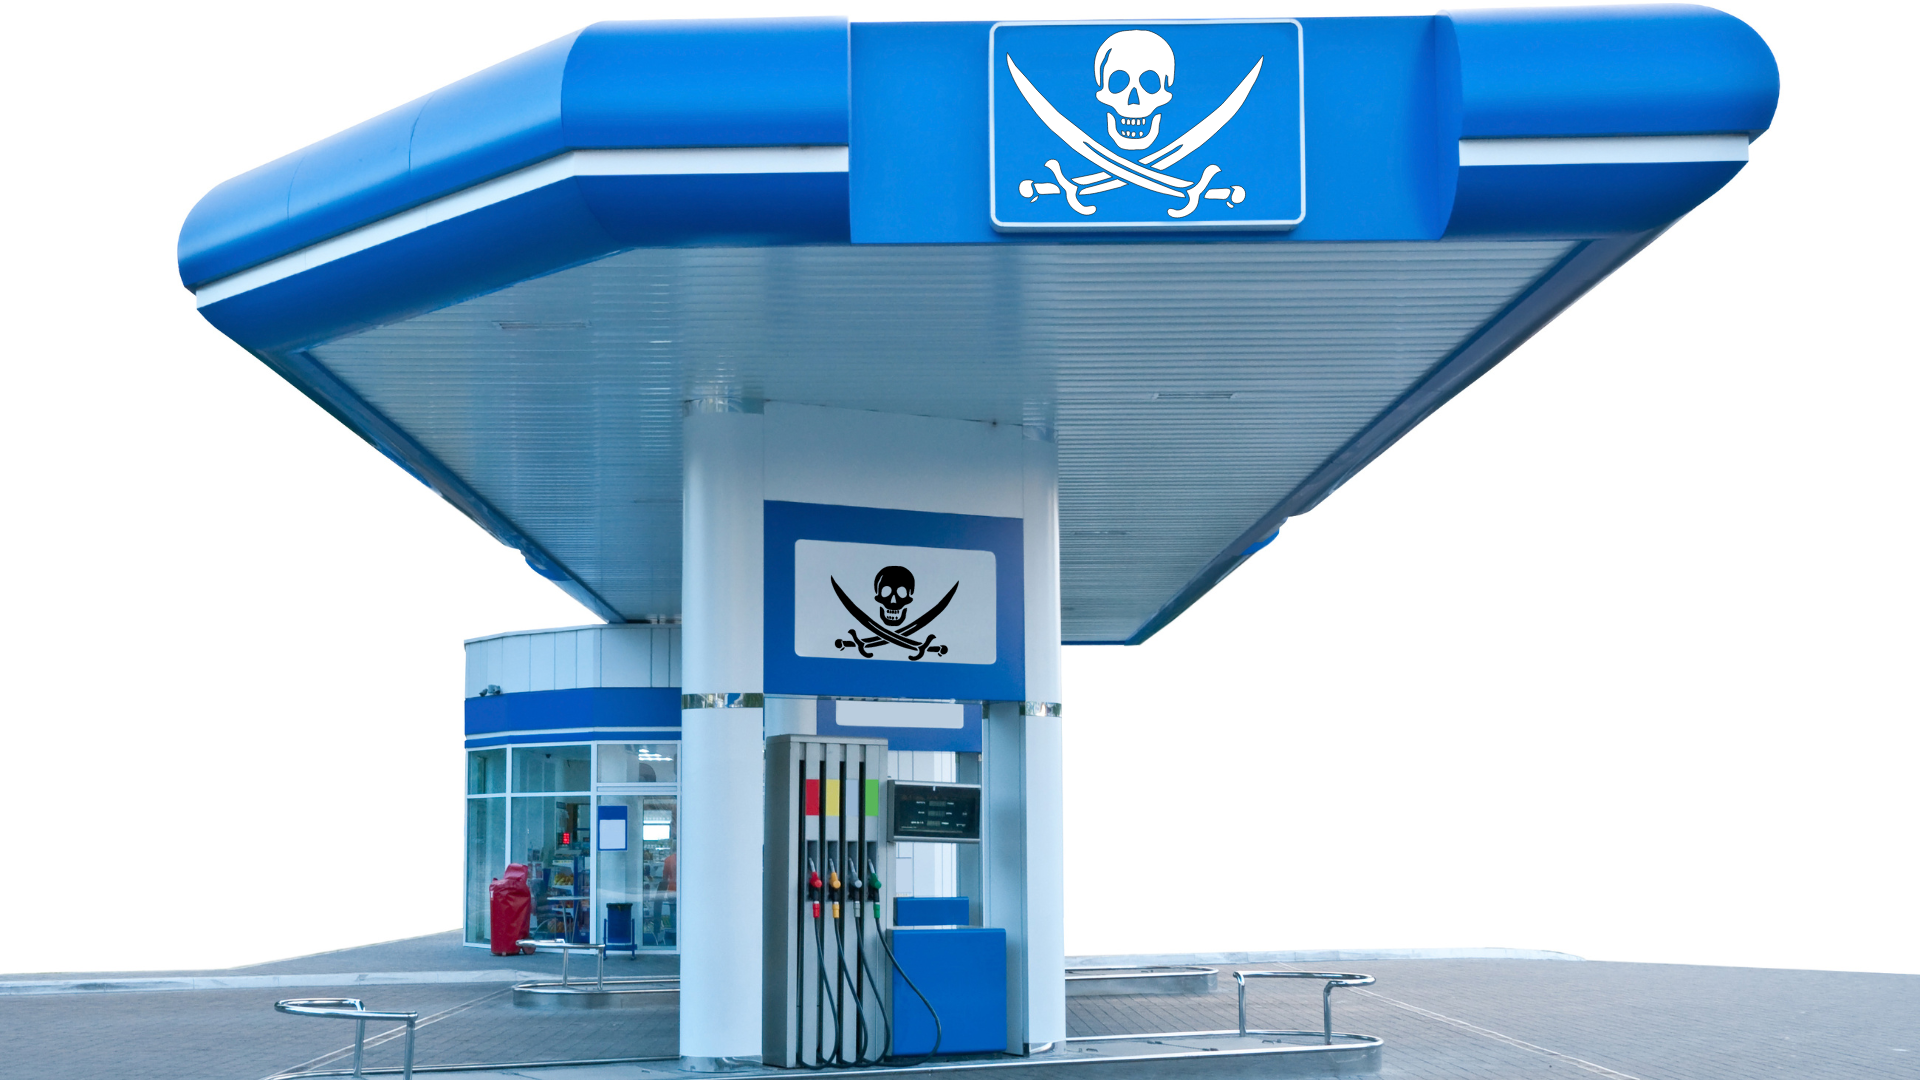 Posto de combustíveis com logos da bandeira pirata